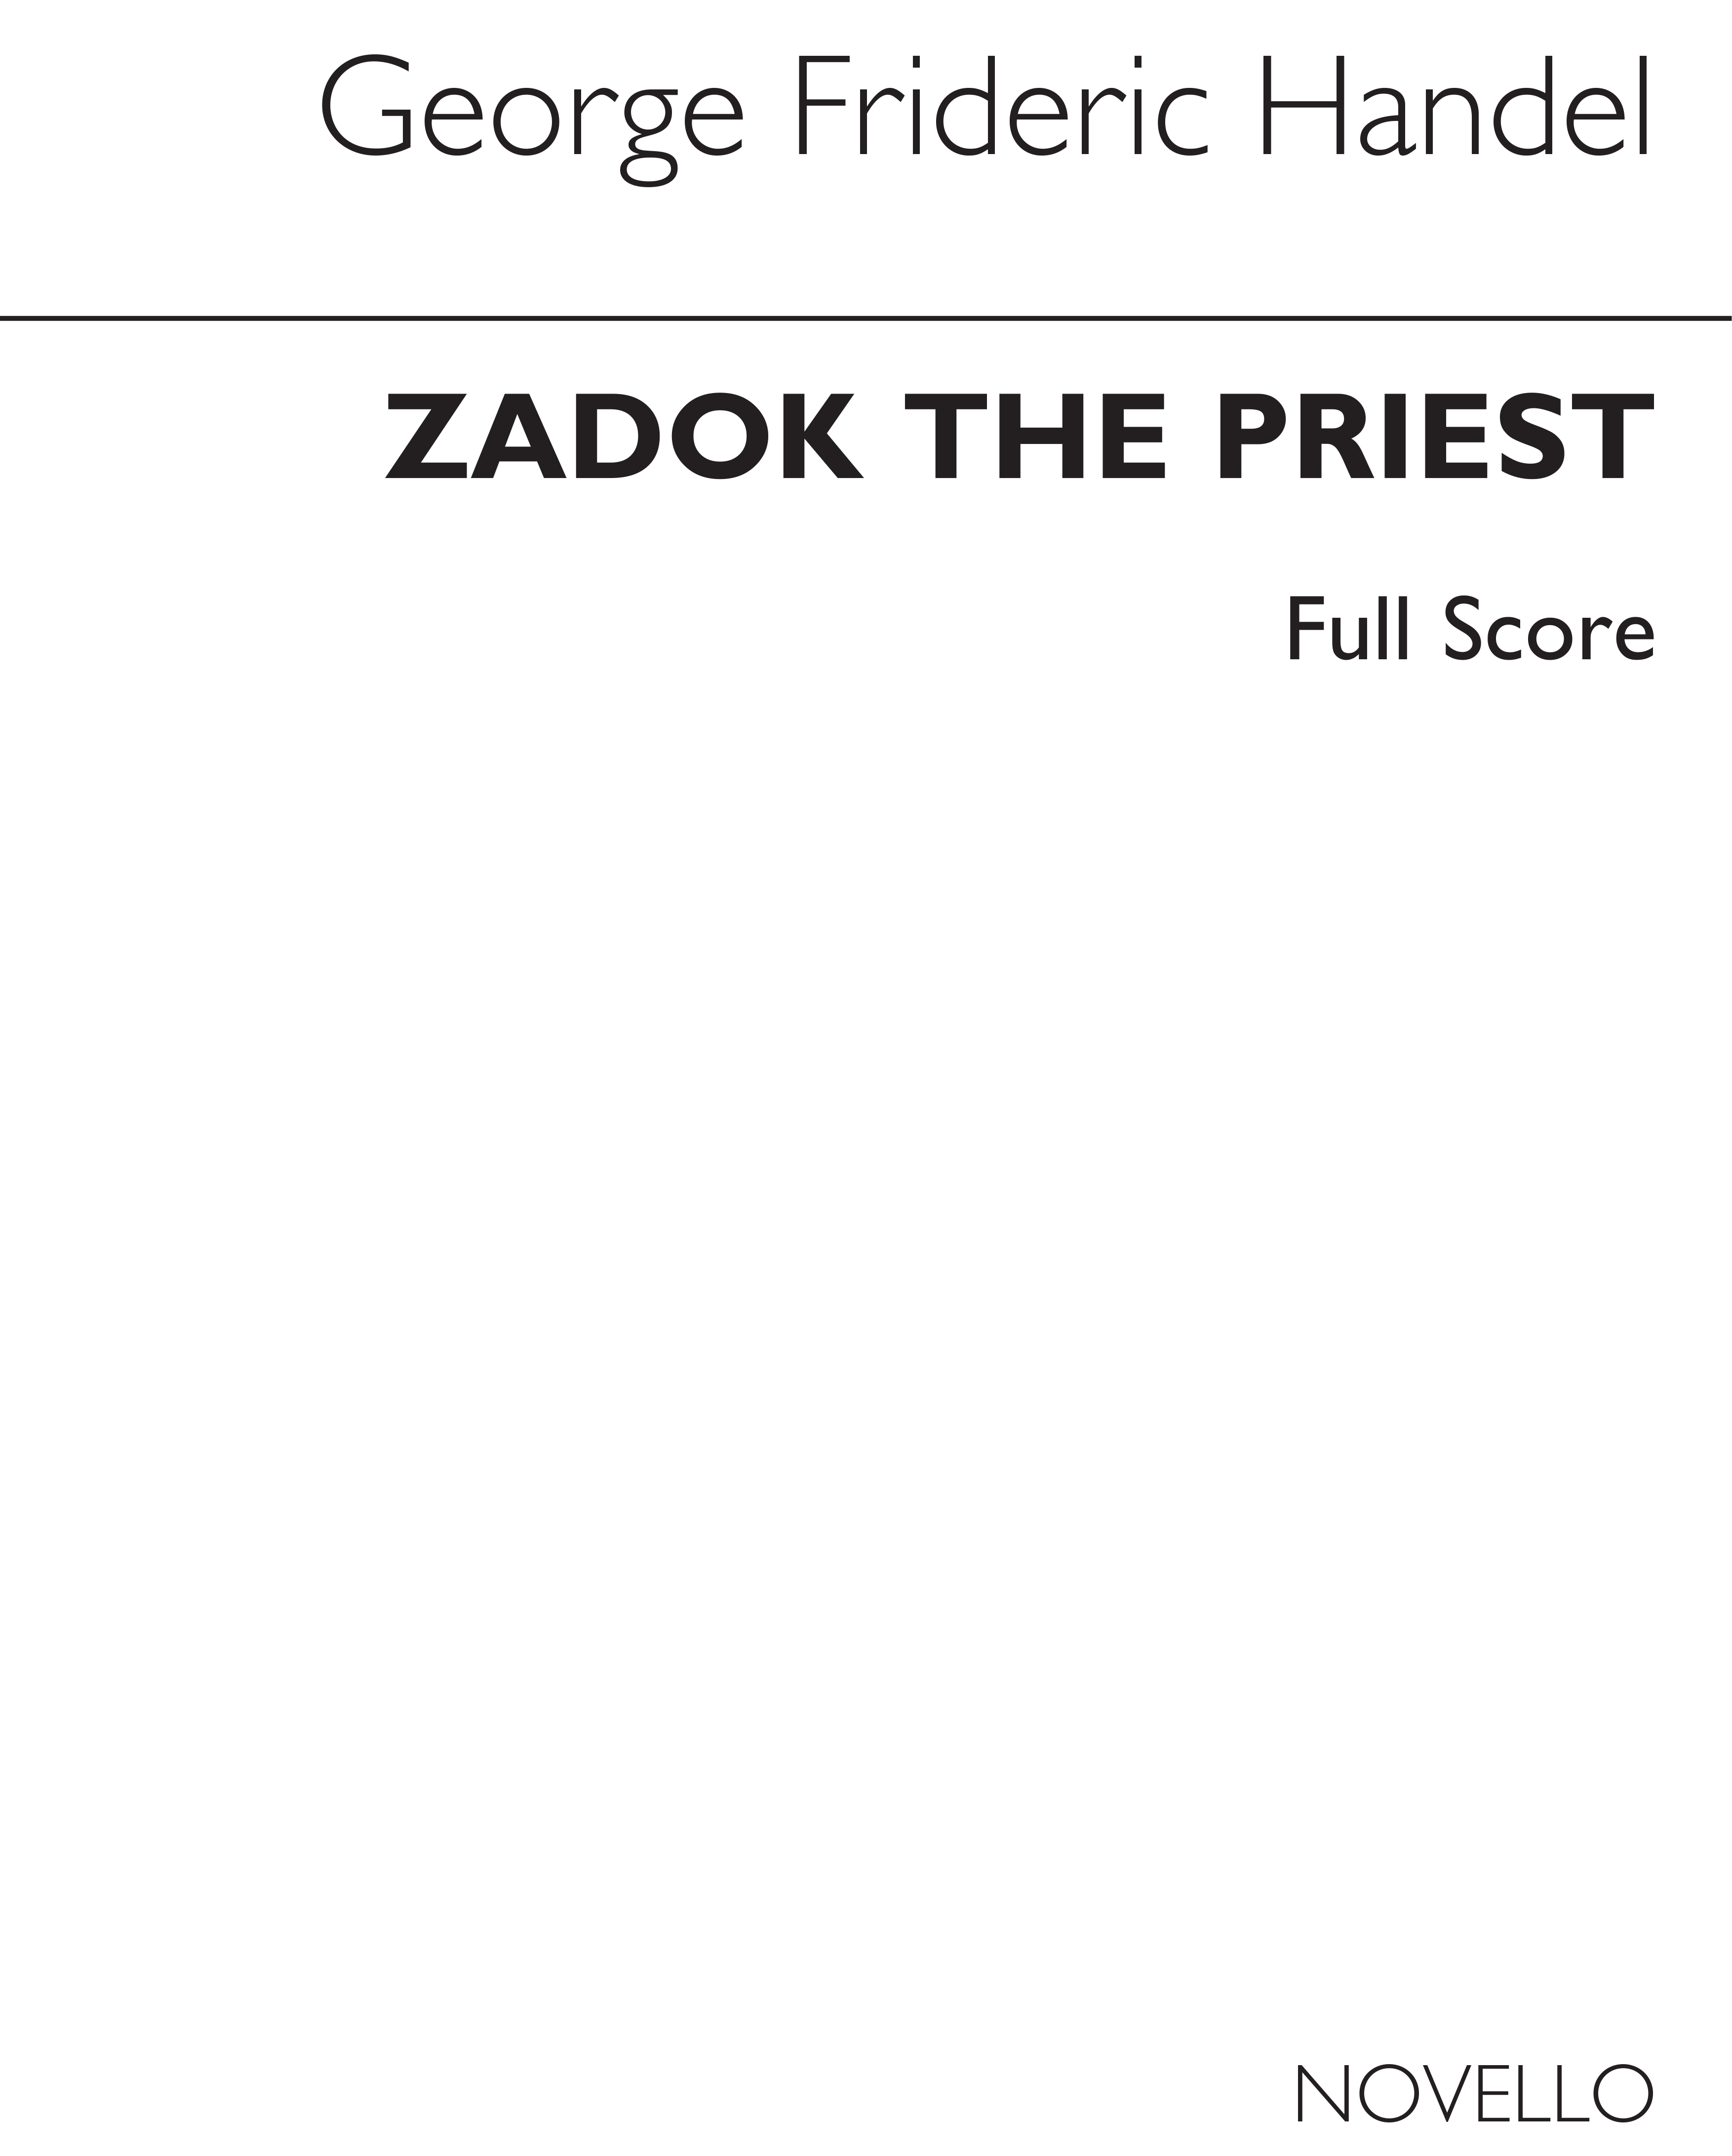 Georg Friedrich Hndel: Zadok The Priest (Ed. Burrows) - Full Score: SATB: Score